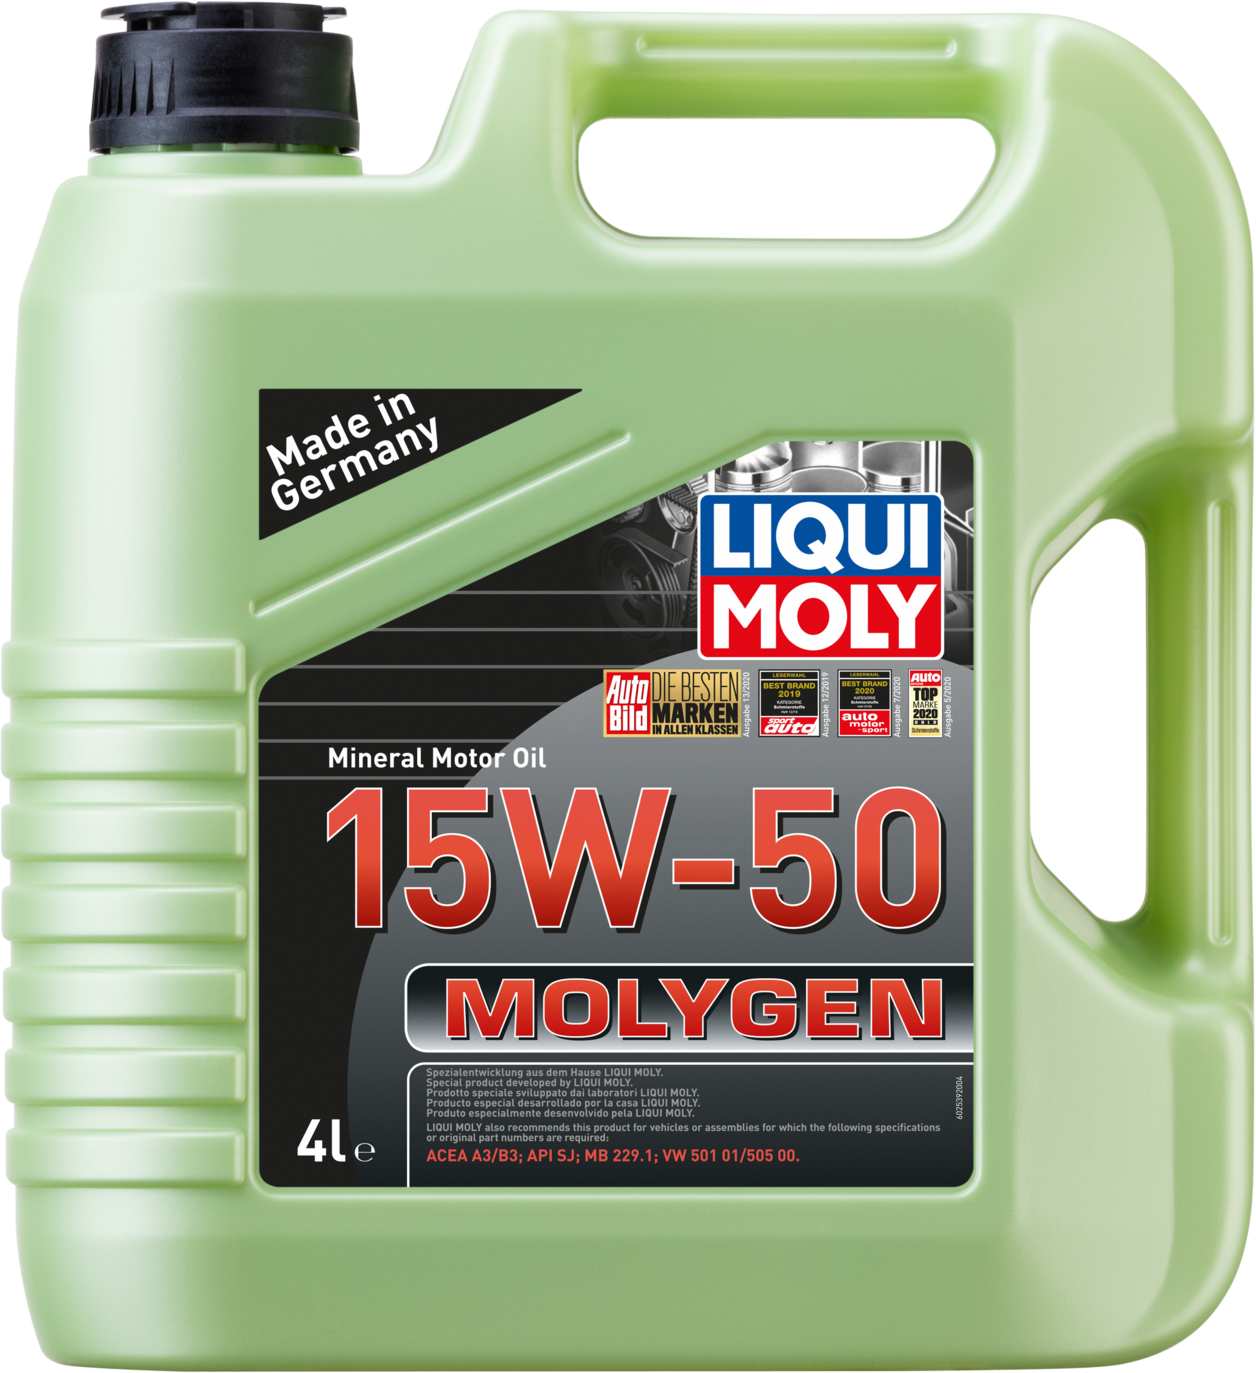 LM2539-4 Liqui Moly Molygen SAE 15W-50 wordt aanbevolen voor benzine- en gasmotoren met inbegrip van motoren met turbocompressoren en katalysatoren.